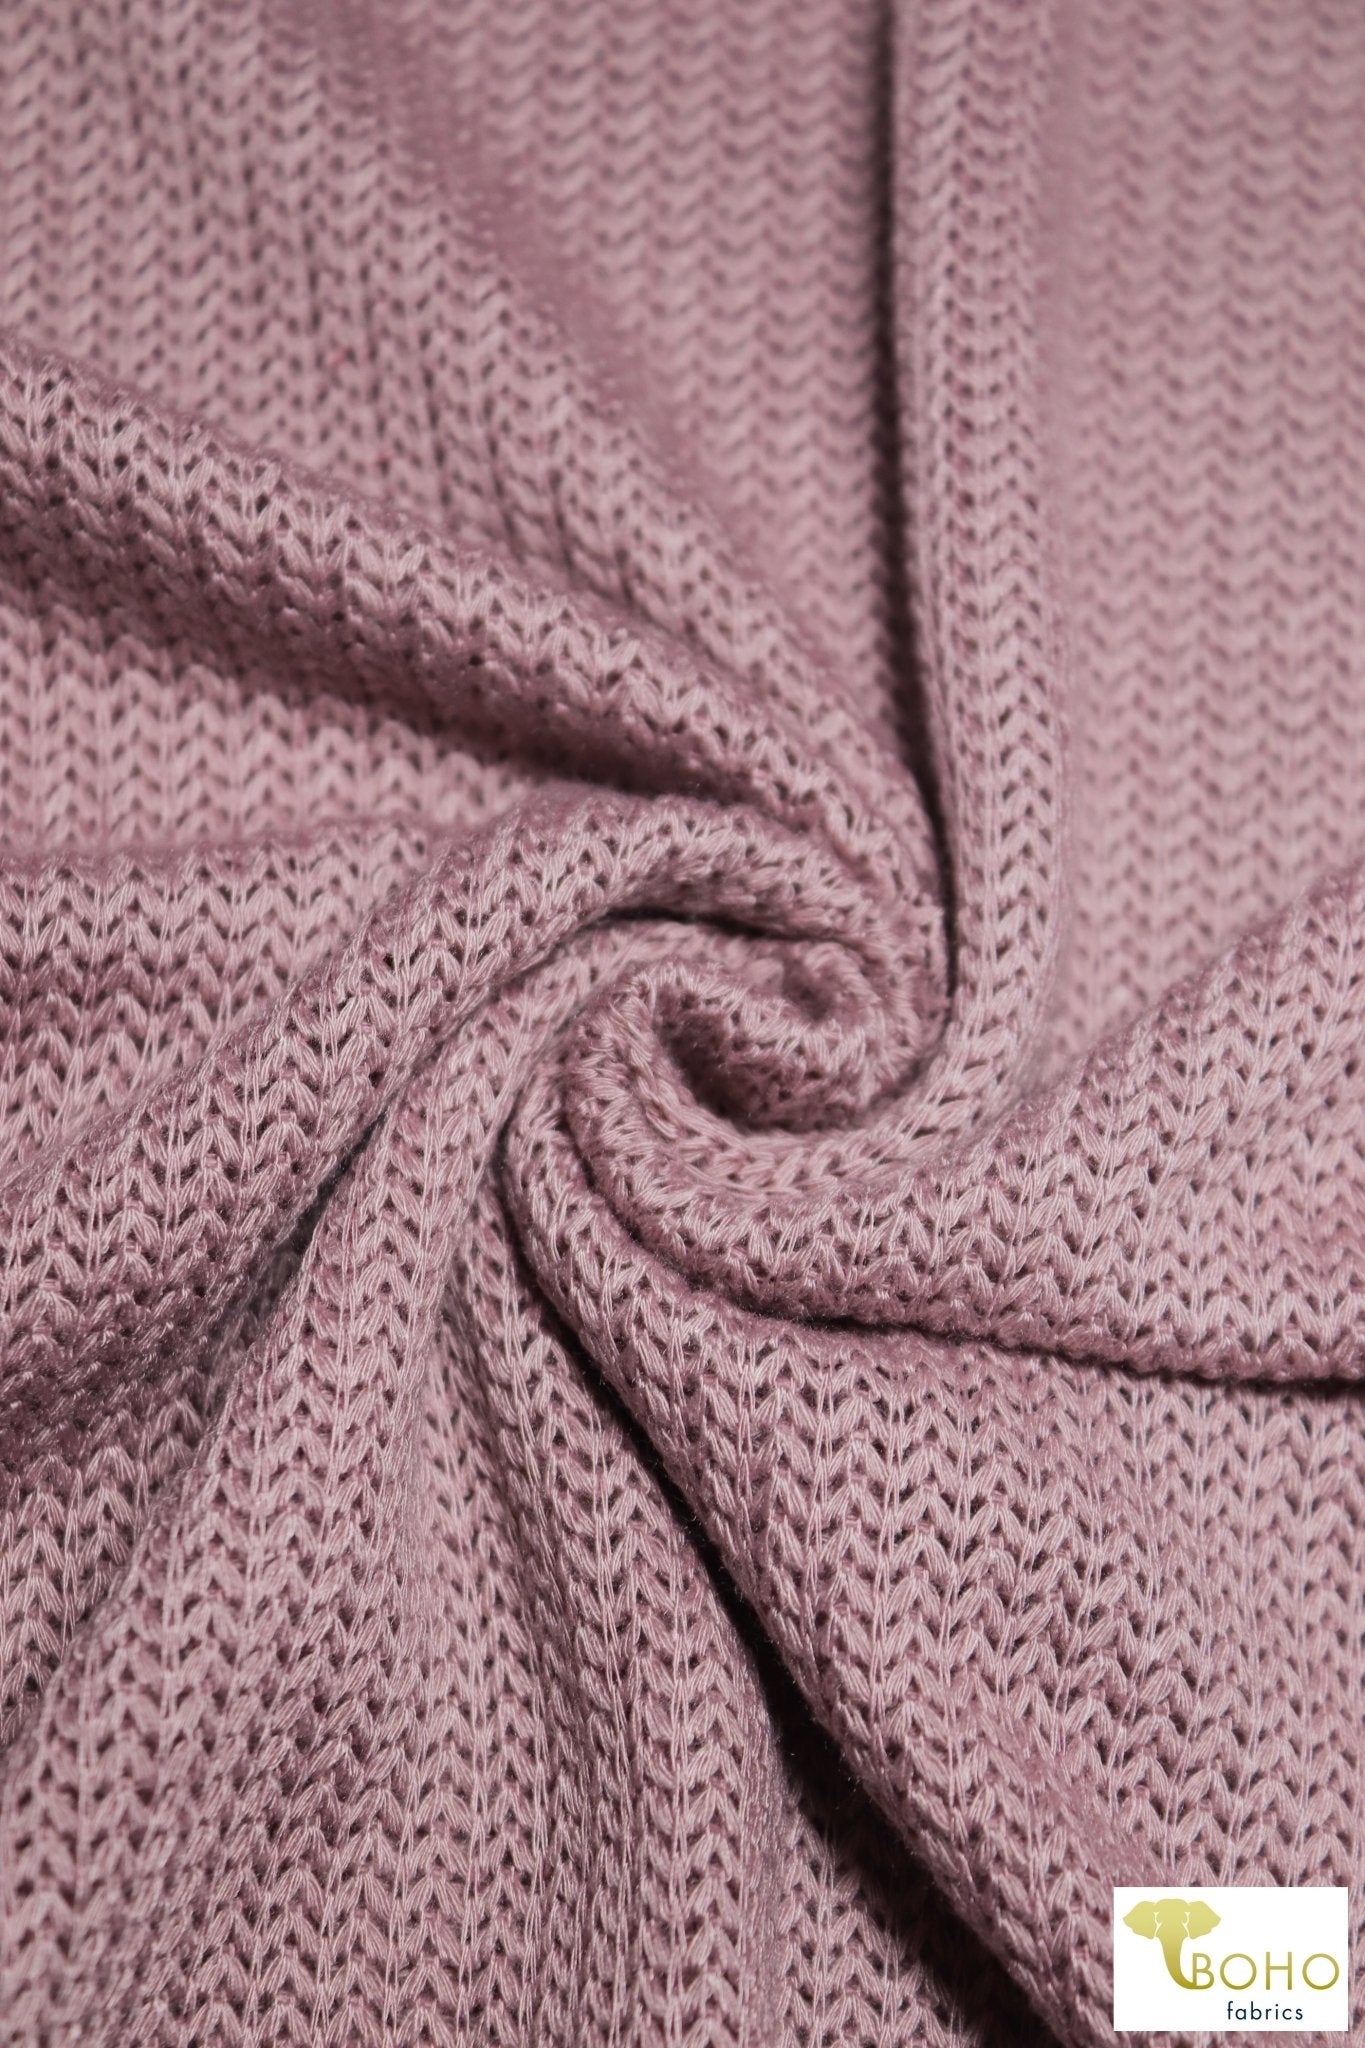 Brioche Stitches in Mauve, Sweater Knit. SWTR-215-PNK - Boho Fabrics